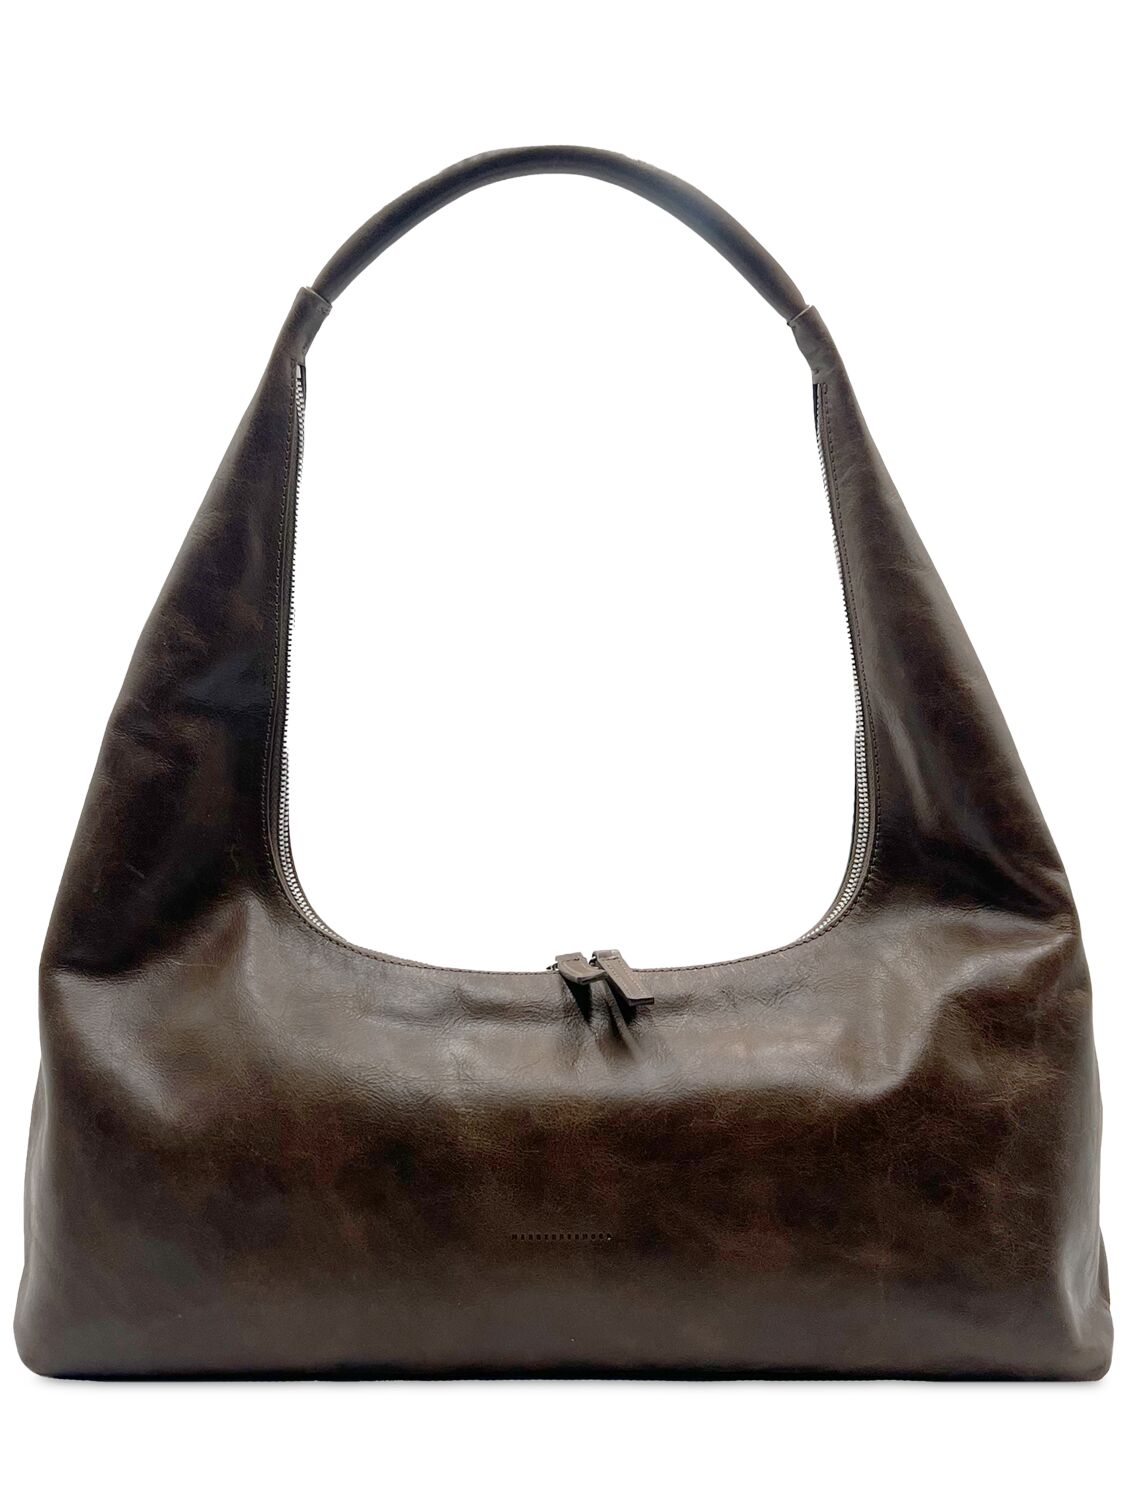 Image of Large Hobo Leather Shoulder Bag